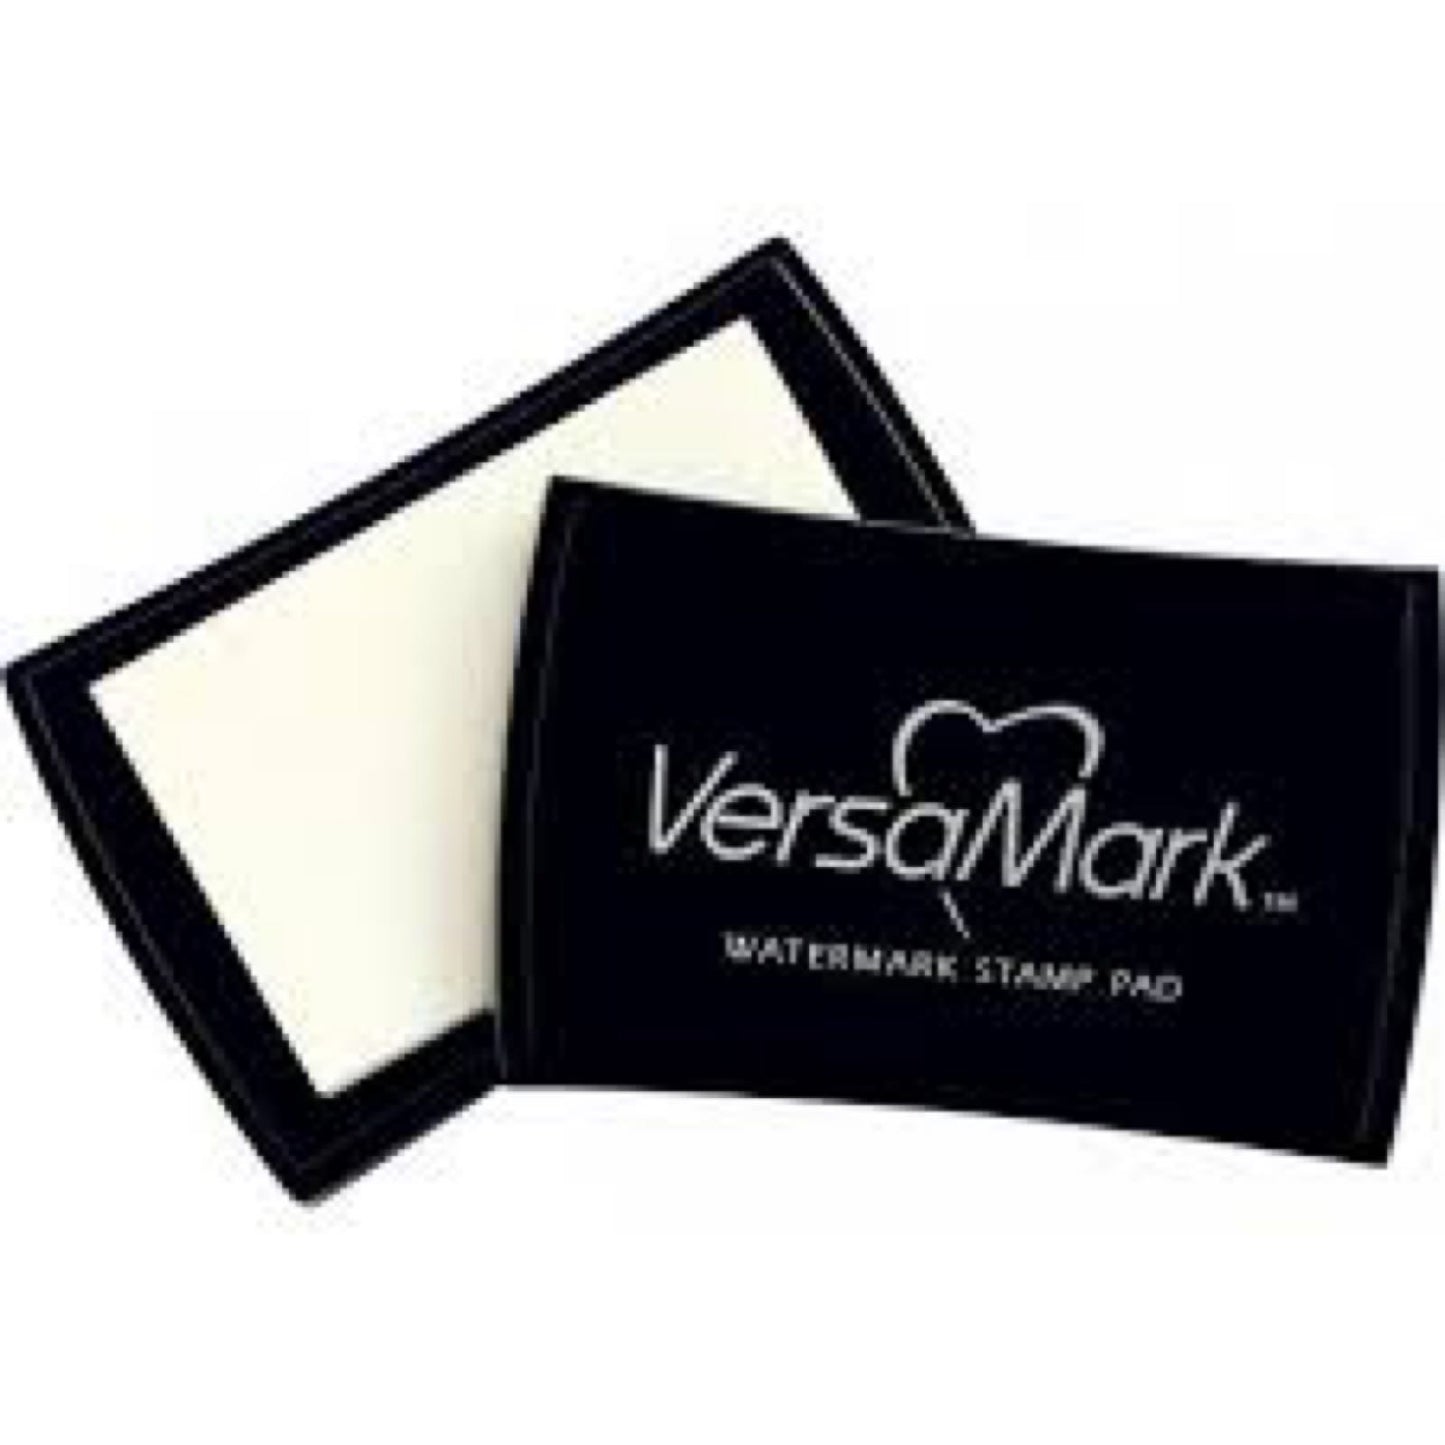 Versamark Embossing limpute/ watermark stamp pad